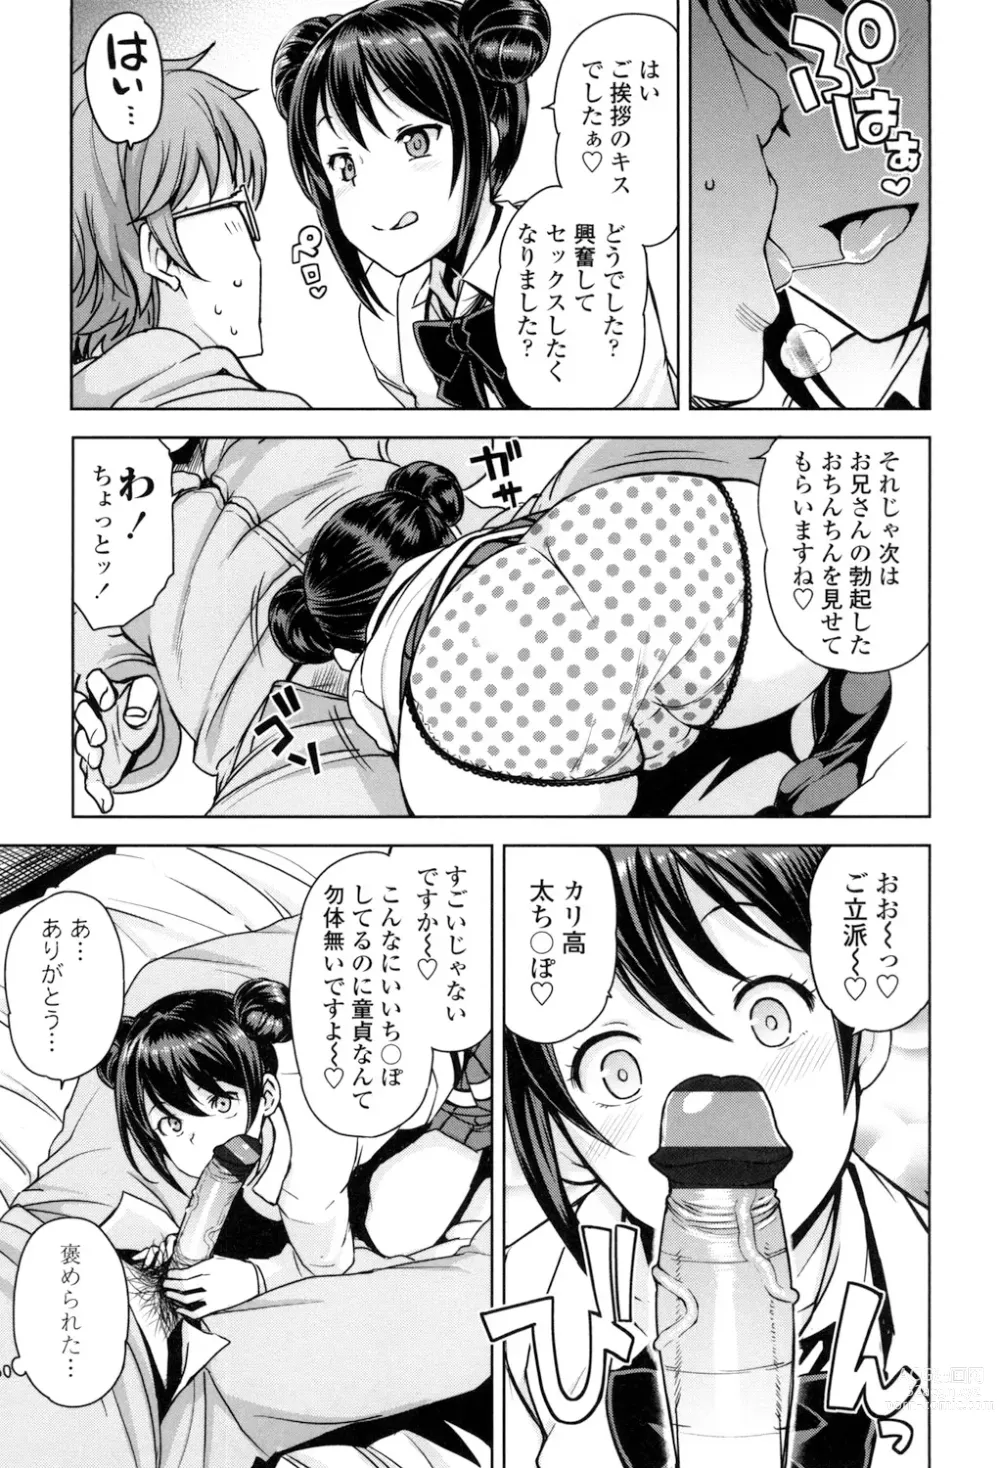 Page 8 of manga Doutei Danshi Kousei Iinkai - Virginity Boy Rebirth Committee